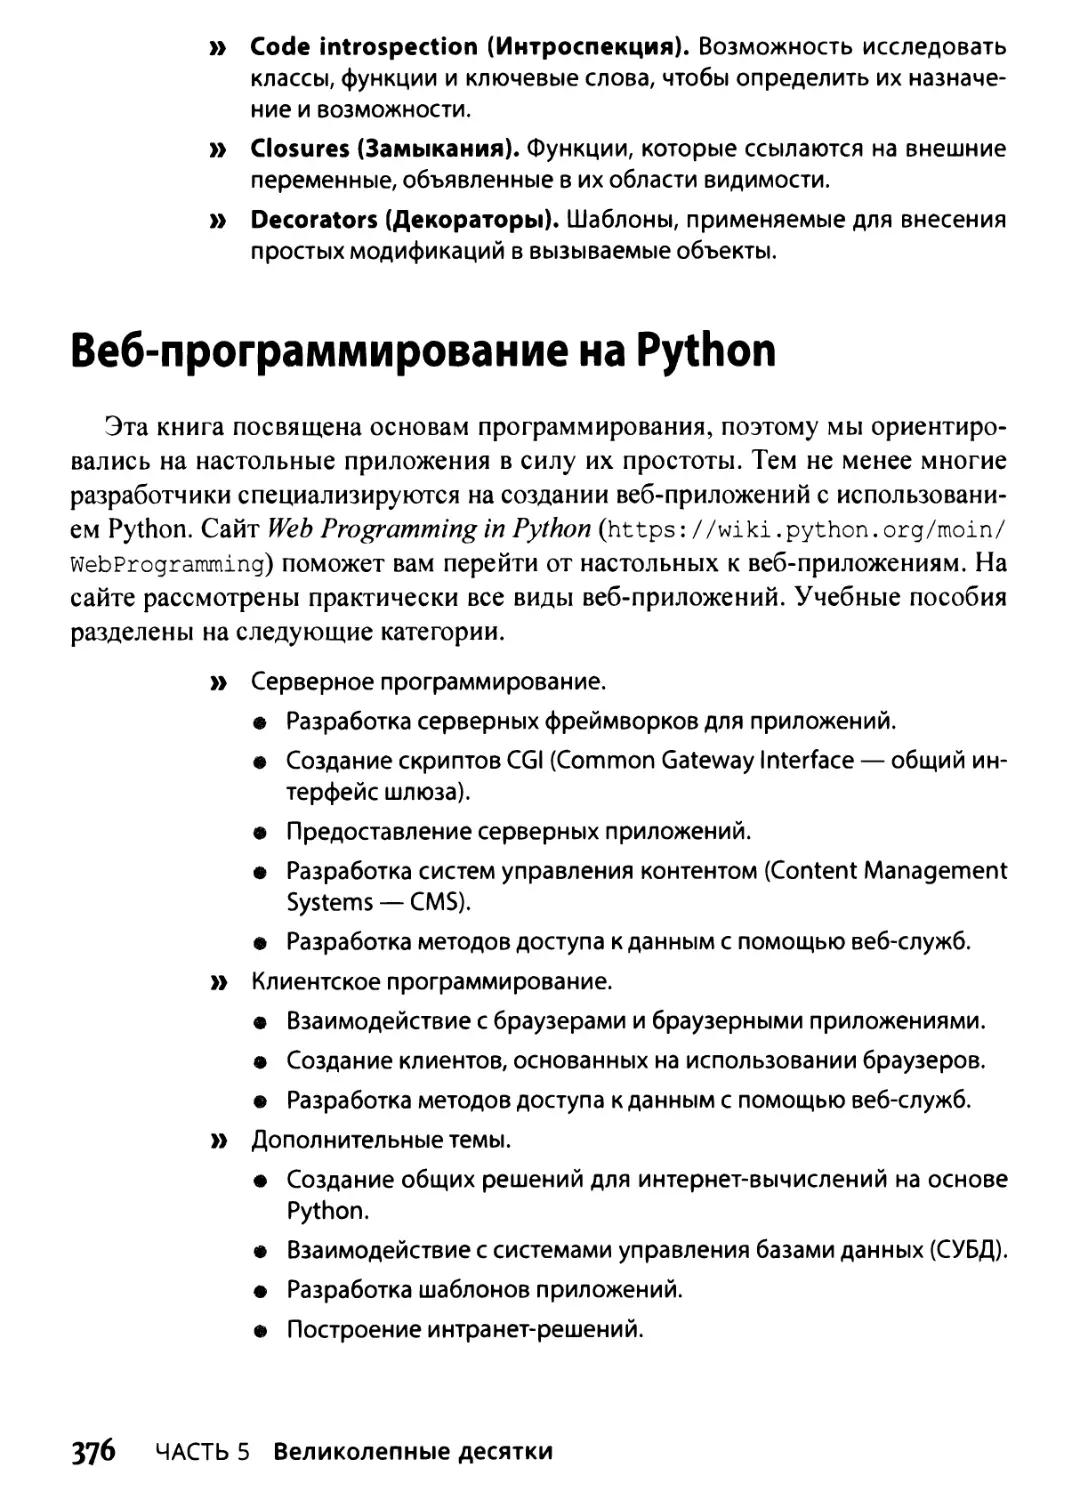 Веб-программирование на Python